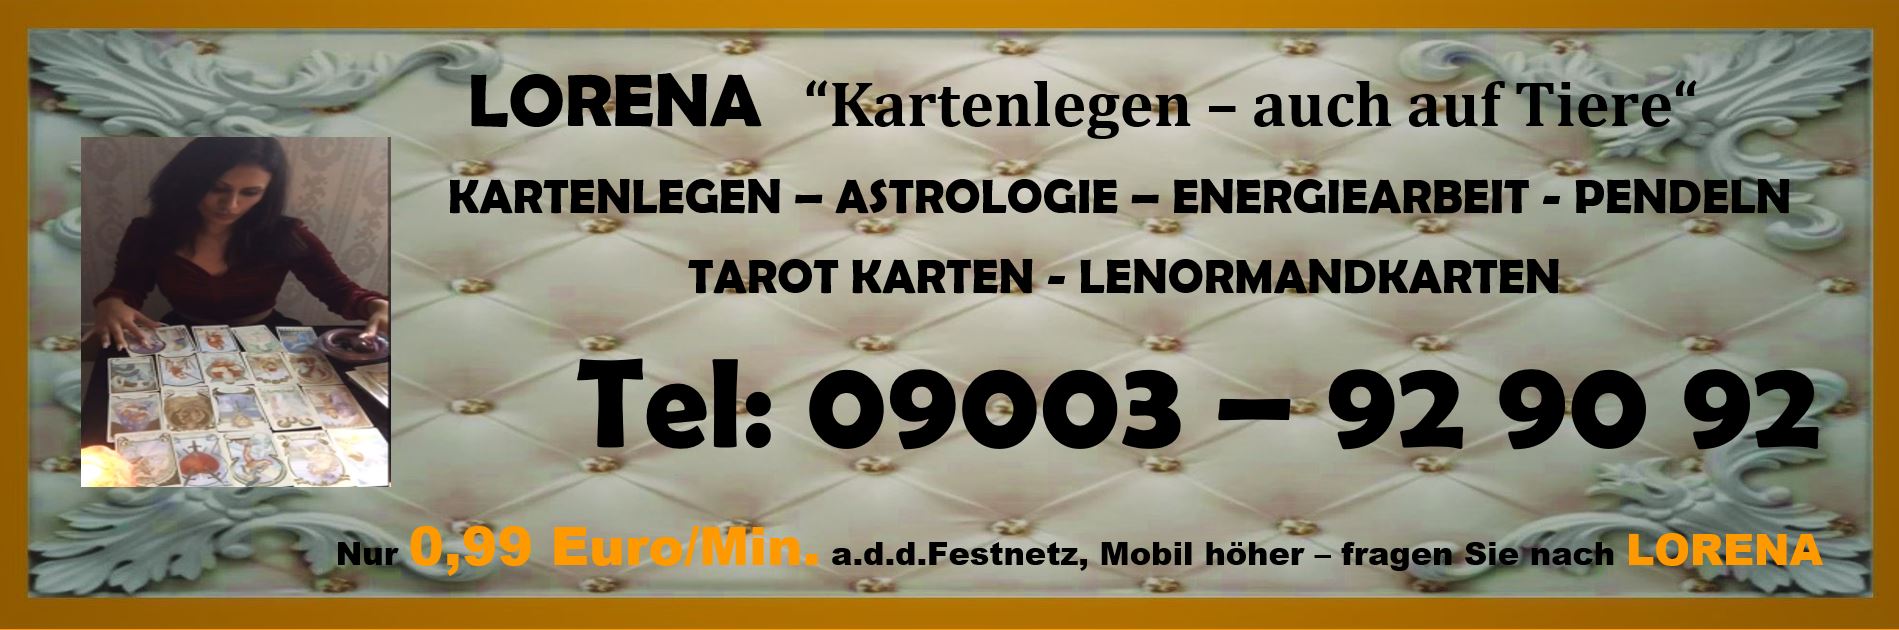 LORENA Kartenlegen, Astrologie, Hellsehen, Pendeln, Lenormandkarten, Tarot Karten